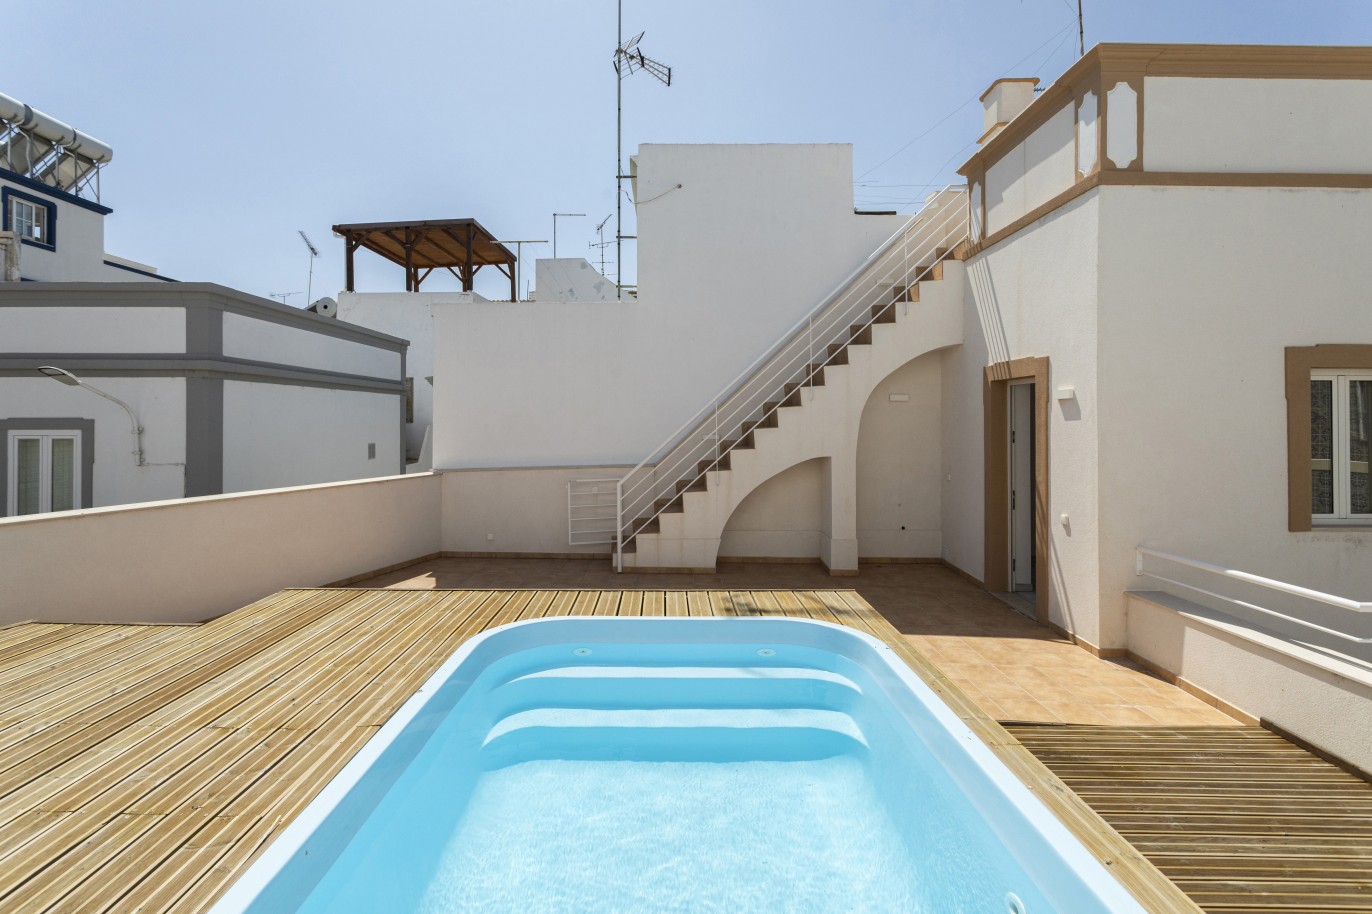 Renovierte Villa mit 3 Schlafzimmern zu verkaufen in der Innenstadt von Olhão, Algarve_227462